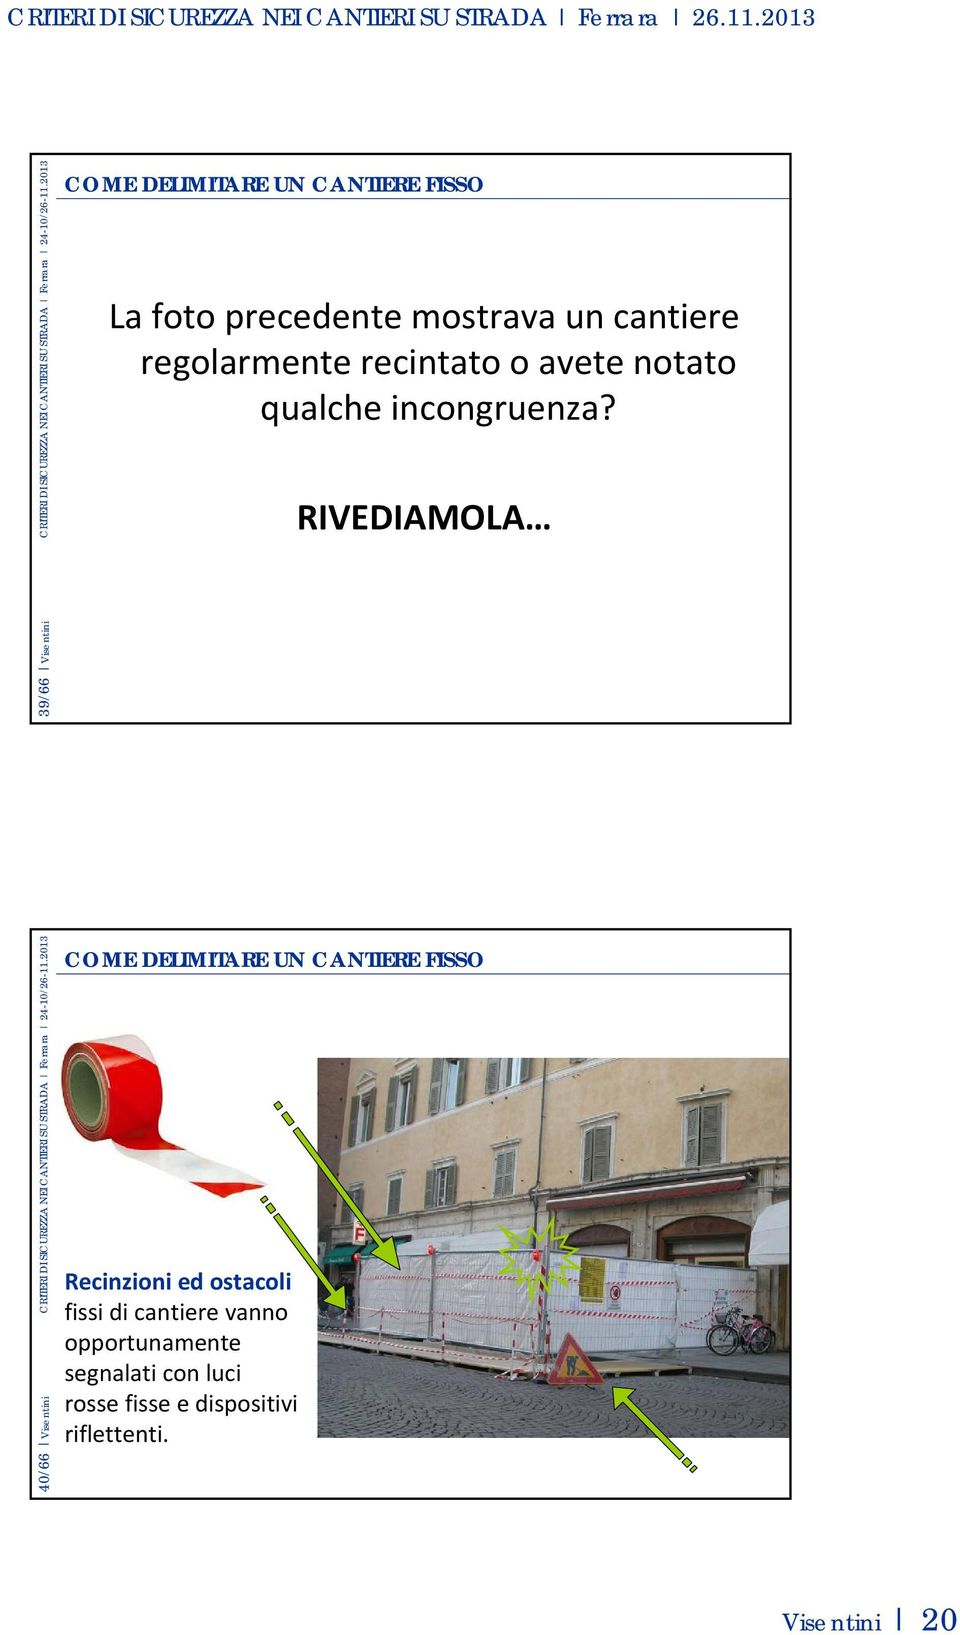 RIVEDIAMOLA 40/66 Visentini CRITERI DI SICUREZZA NEI CANTIERI SU STRADA Ferrara 24-10/26-11.